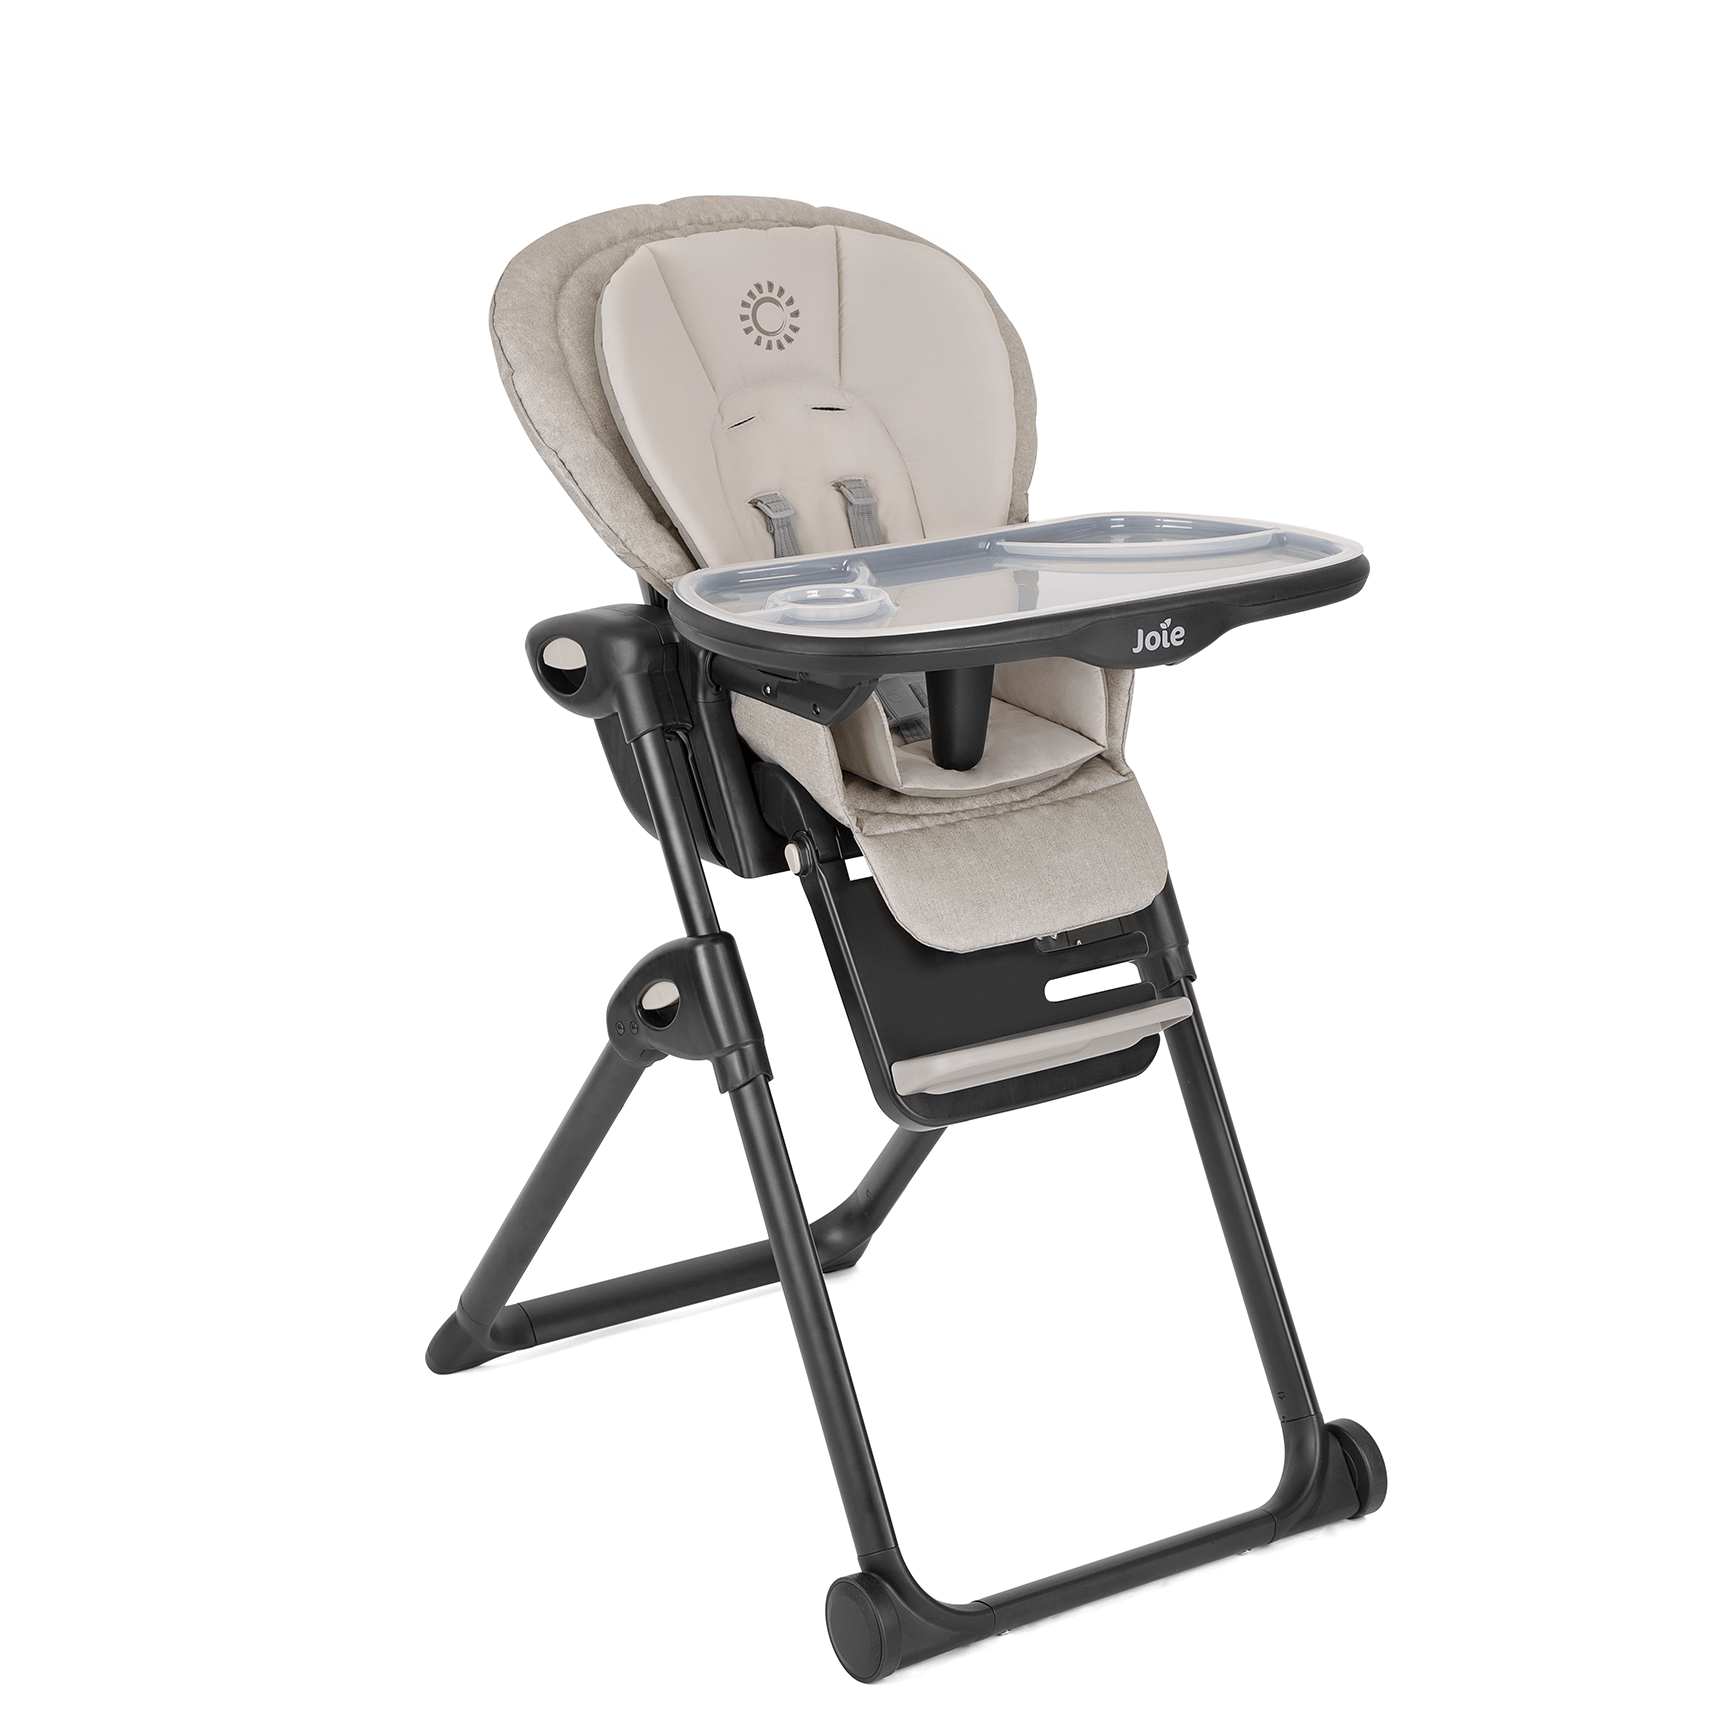 Joie baby highchairs Joie Mimzy Recline Highchair - Speckled H1013DASPK000